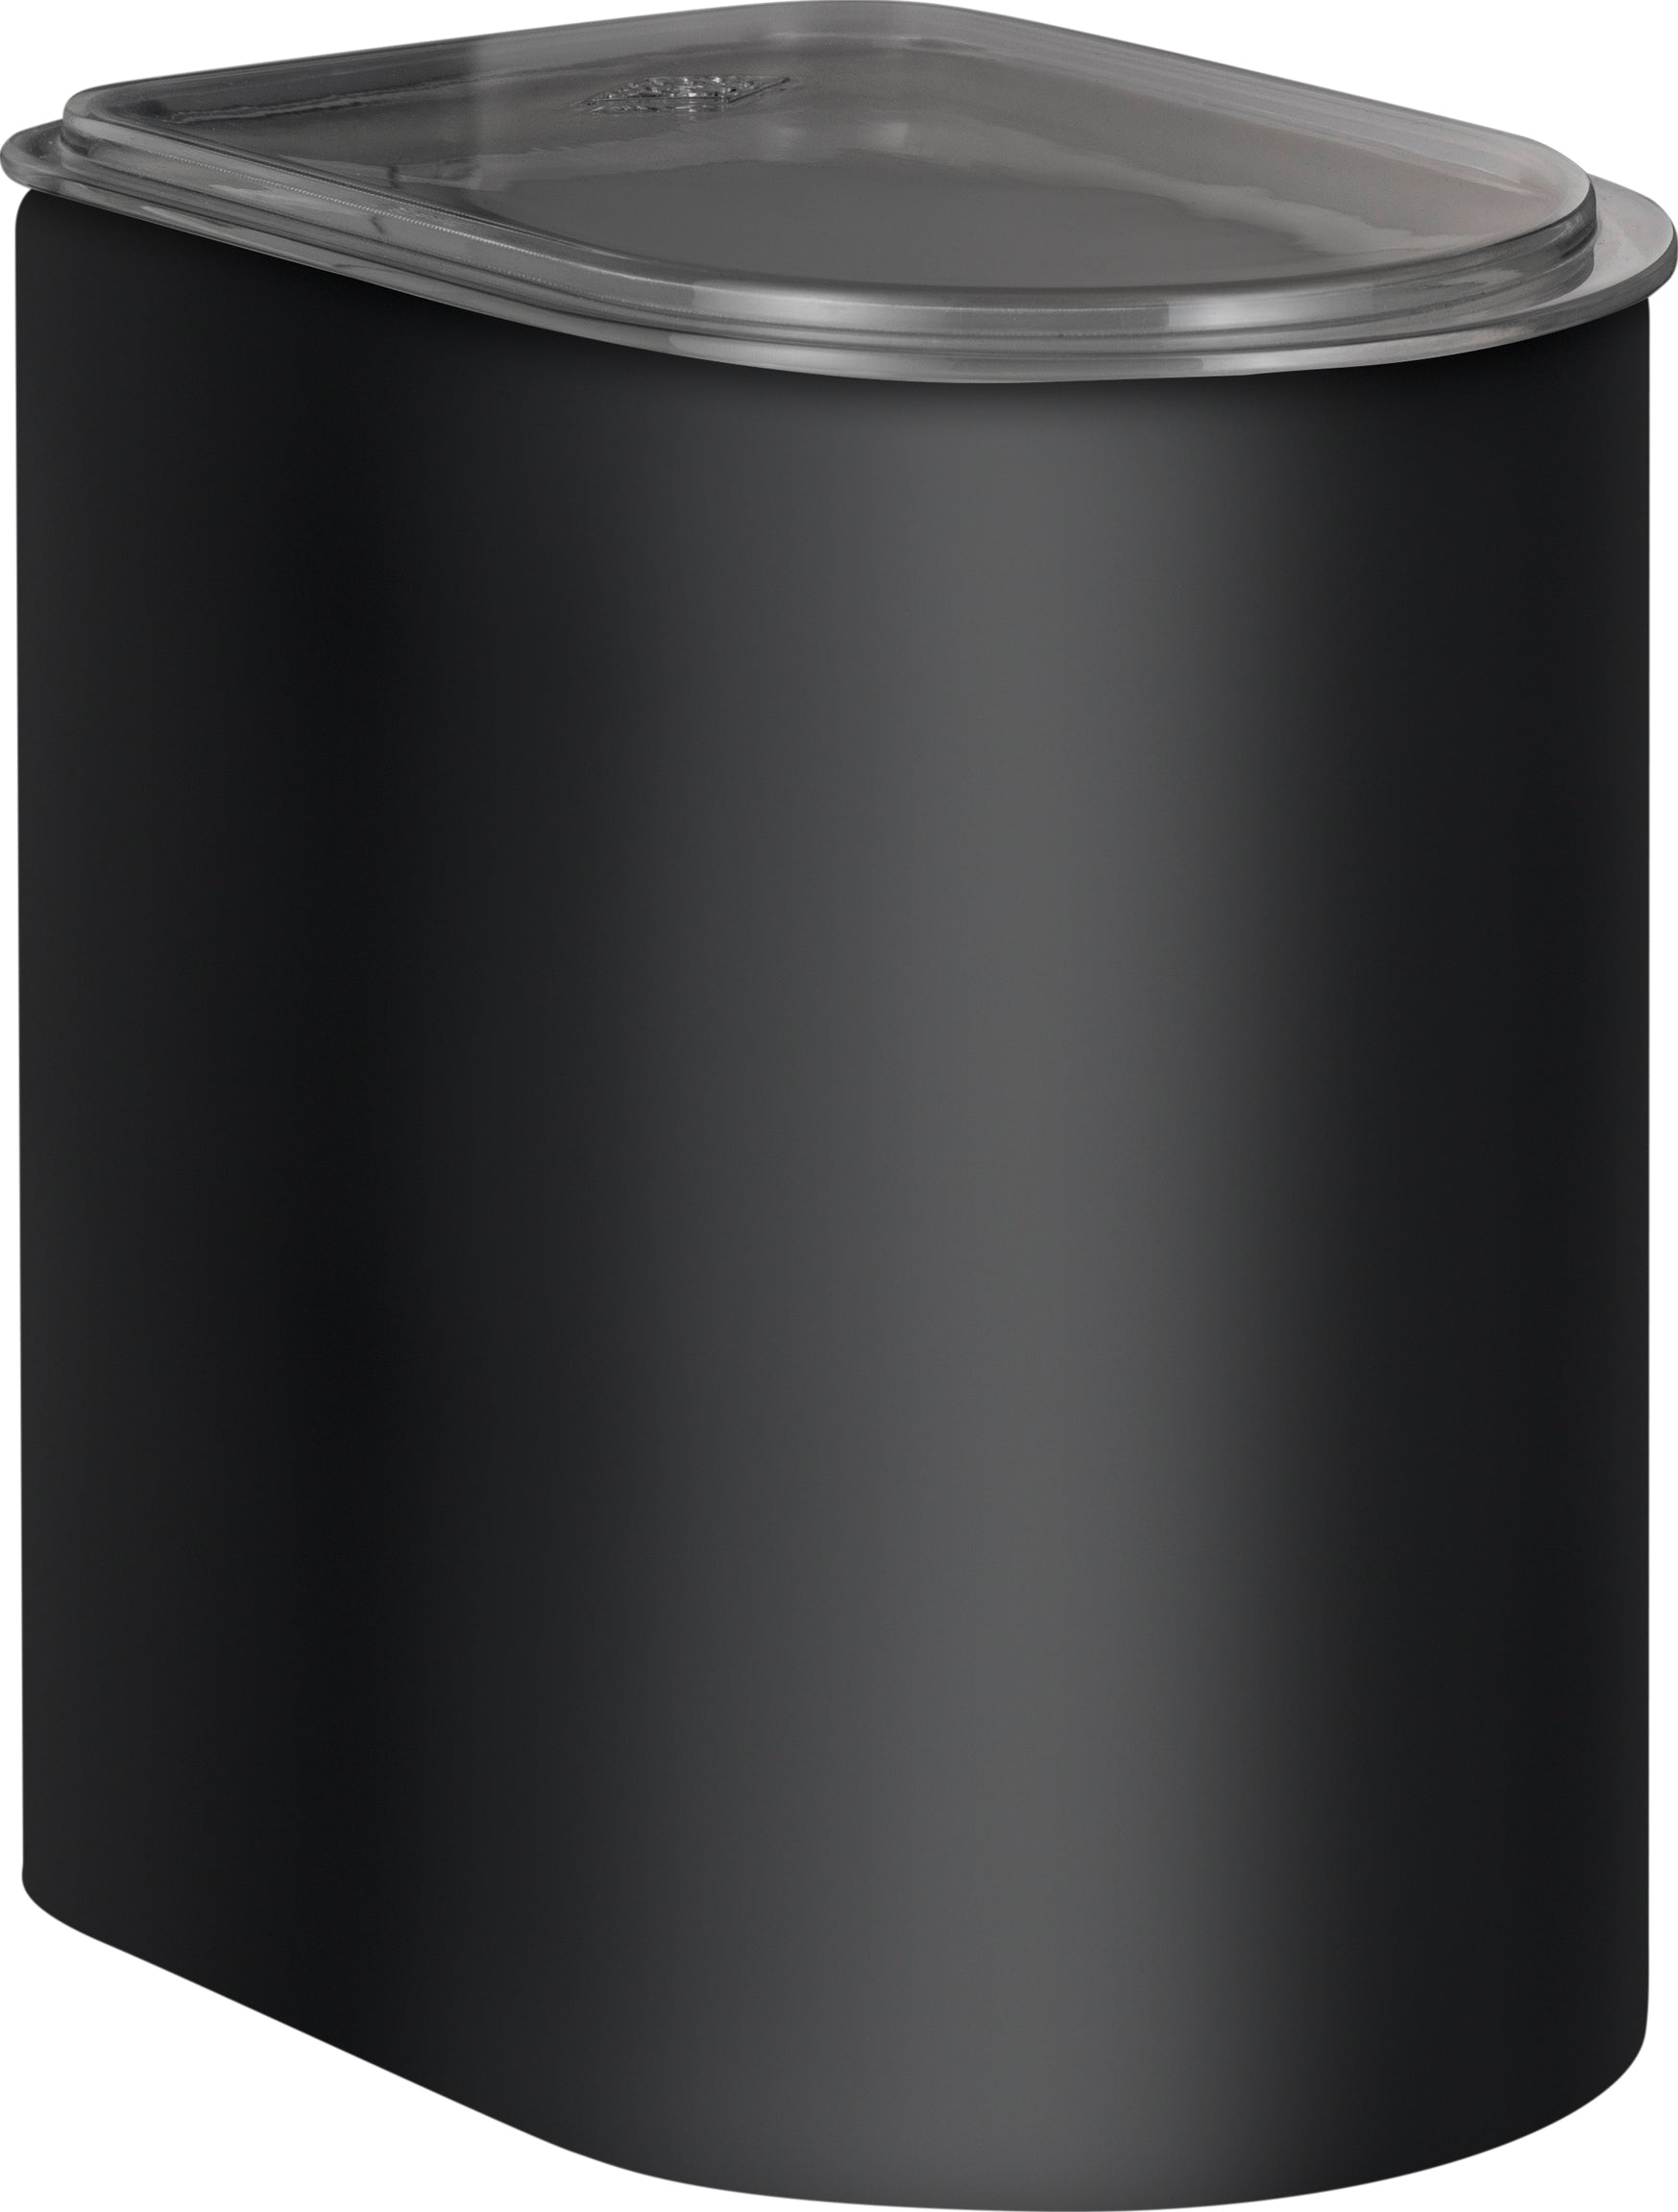 Wesco Lagringslåda 2.2 liter, svart matta